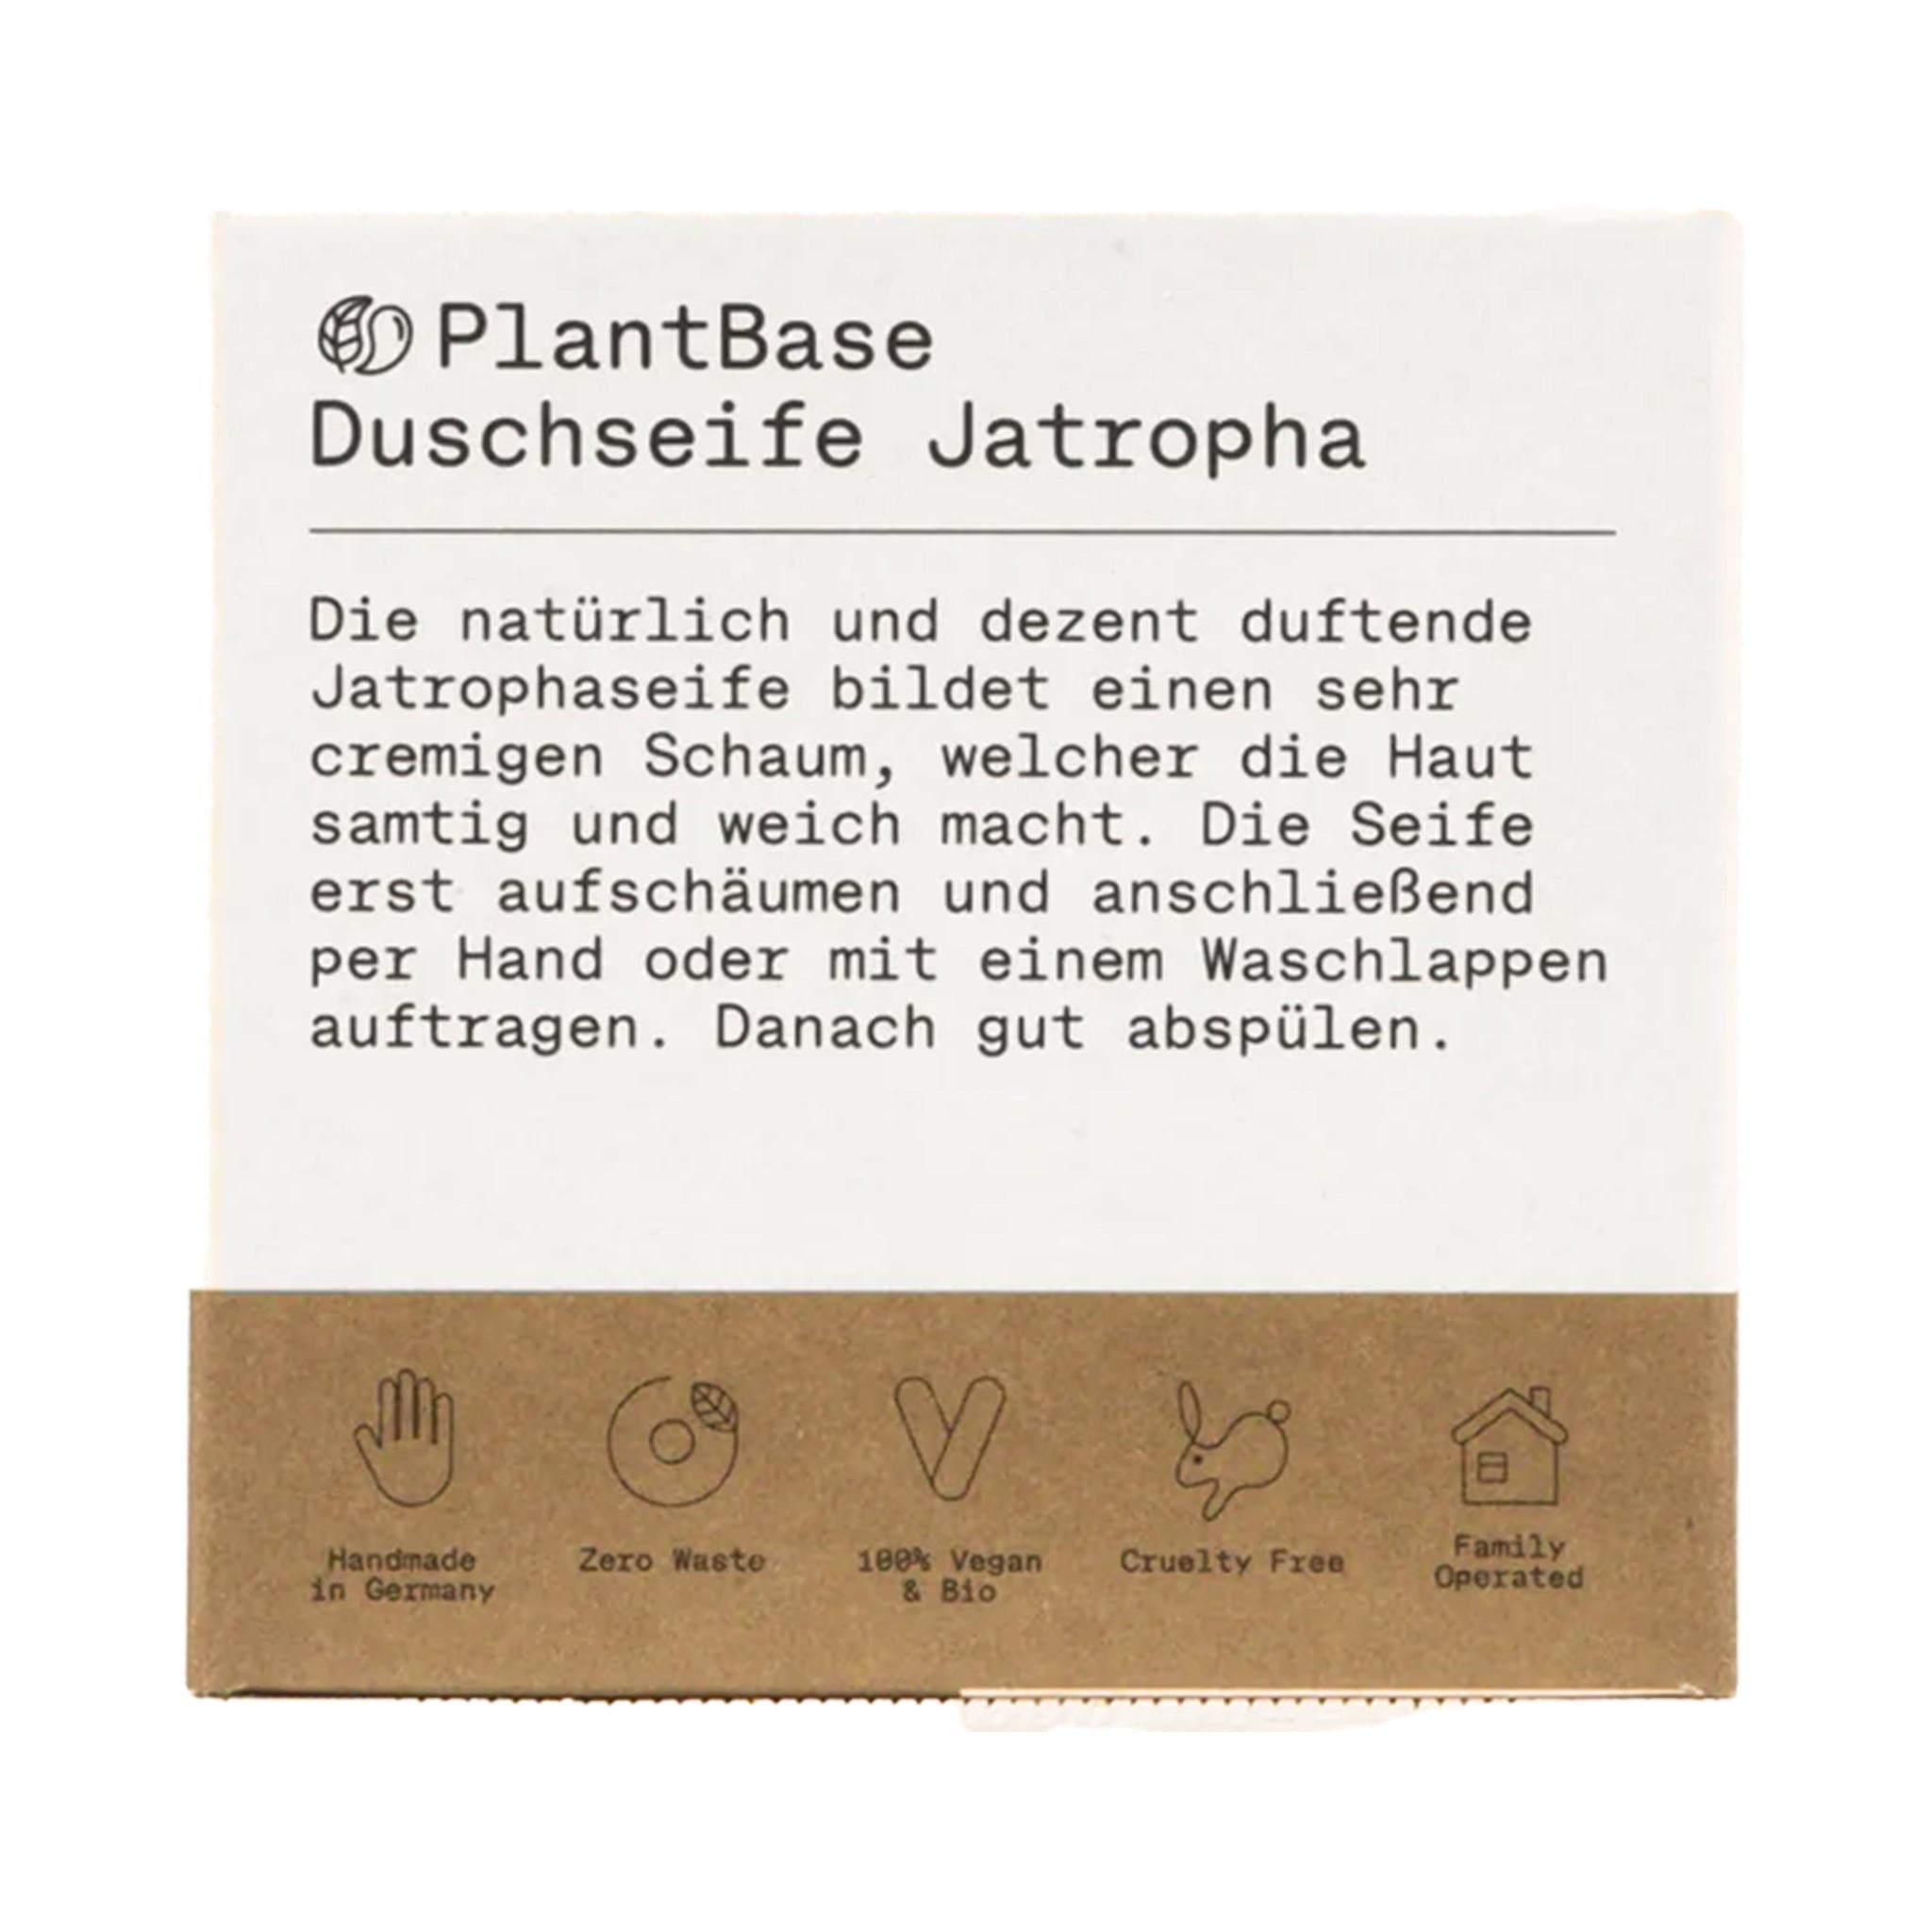 Duschseife "Jatropha", handgemacht – 100g